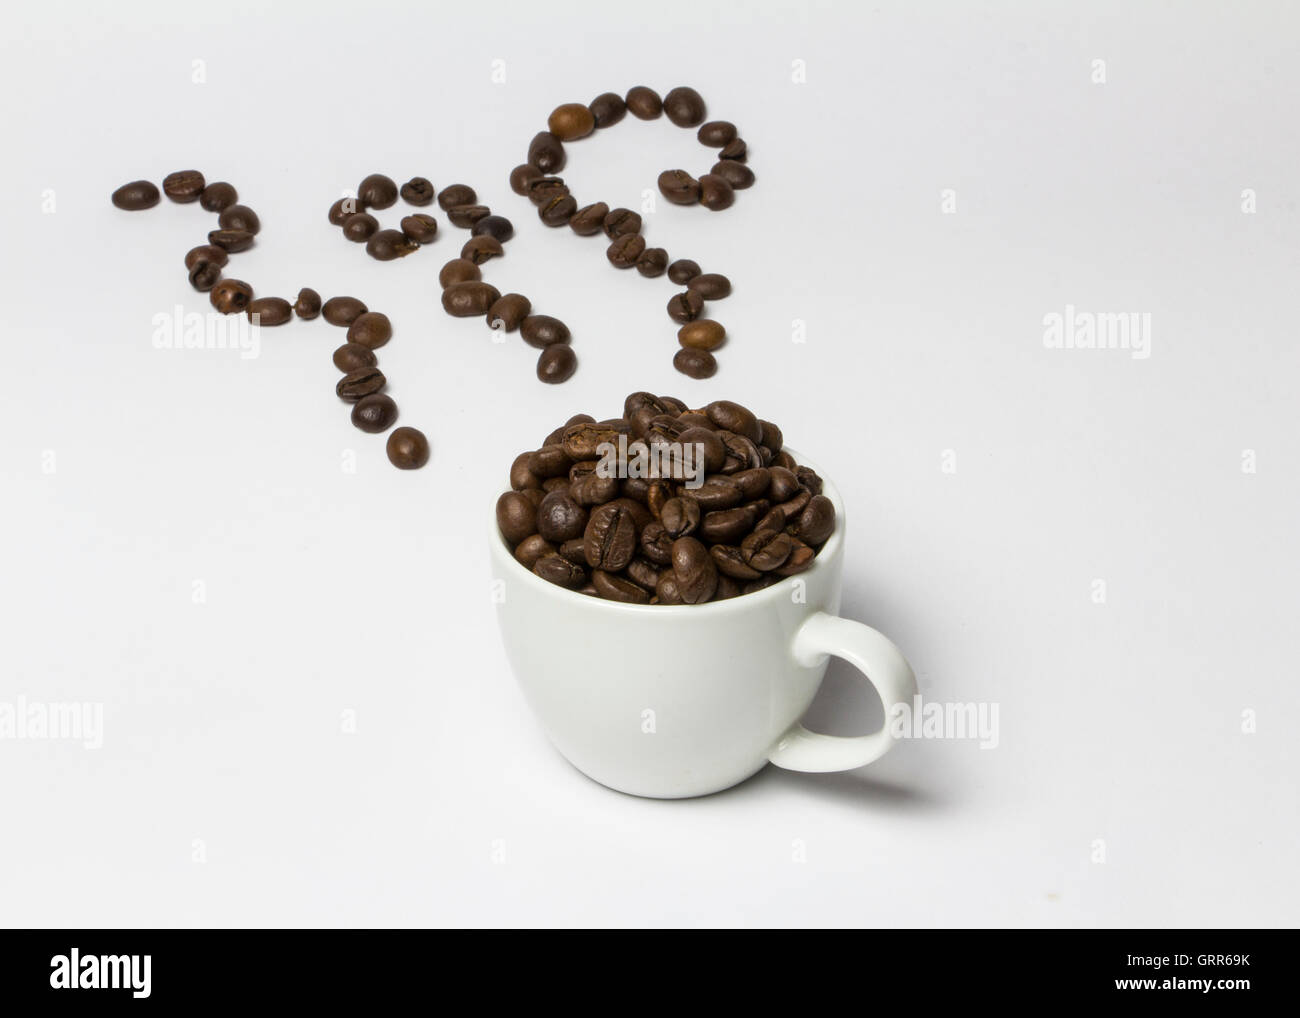 Tasse de café remplie de grains de café et de la vapeur, faite avec des grains de café venant d'elle. Créatif, original. Banque D'Images